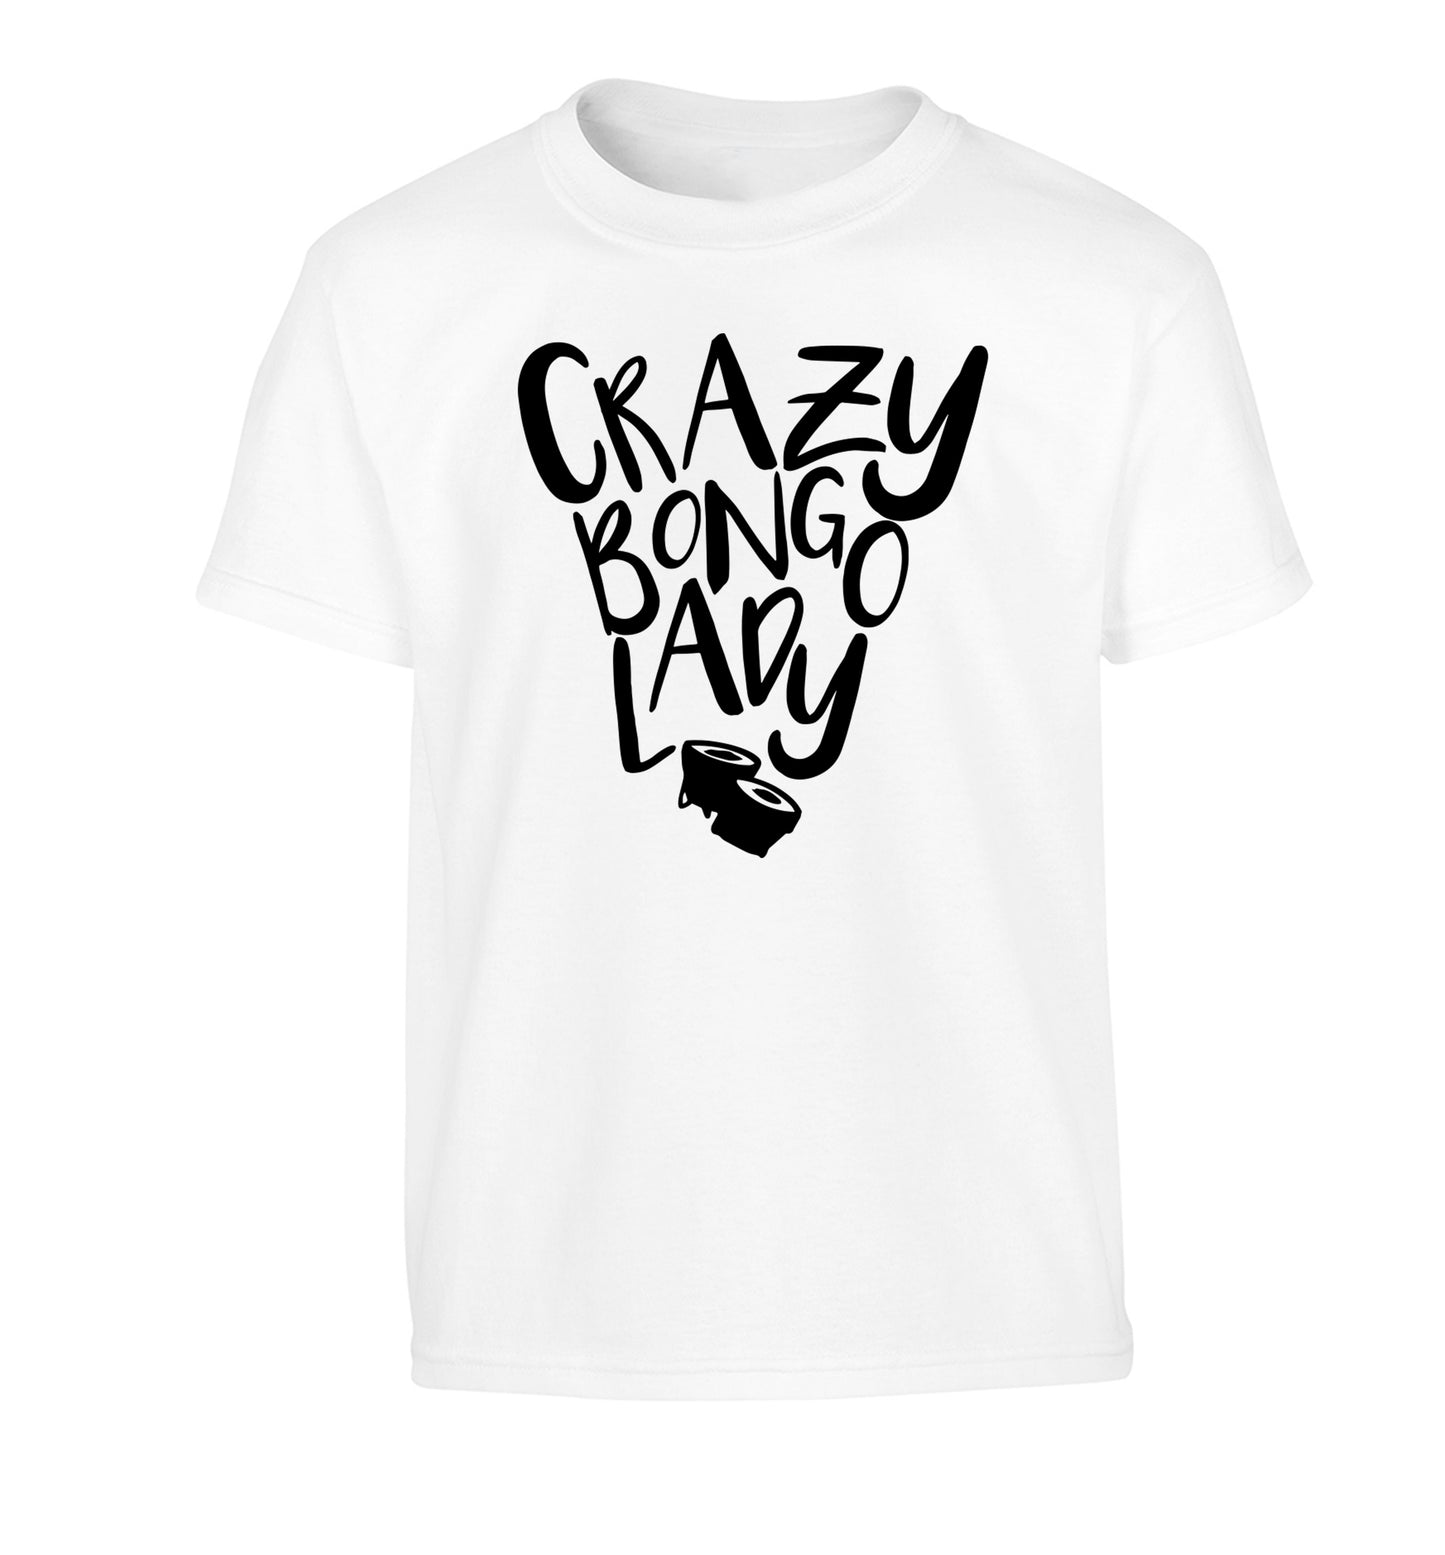 Crazy bongo lady Children's white Tshirt 12-14 Years